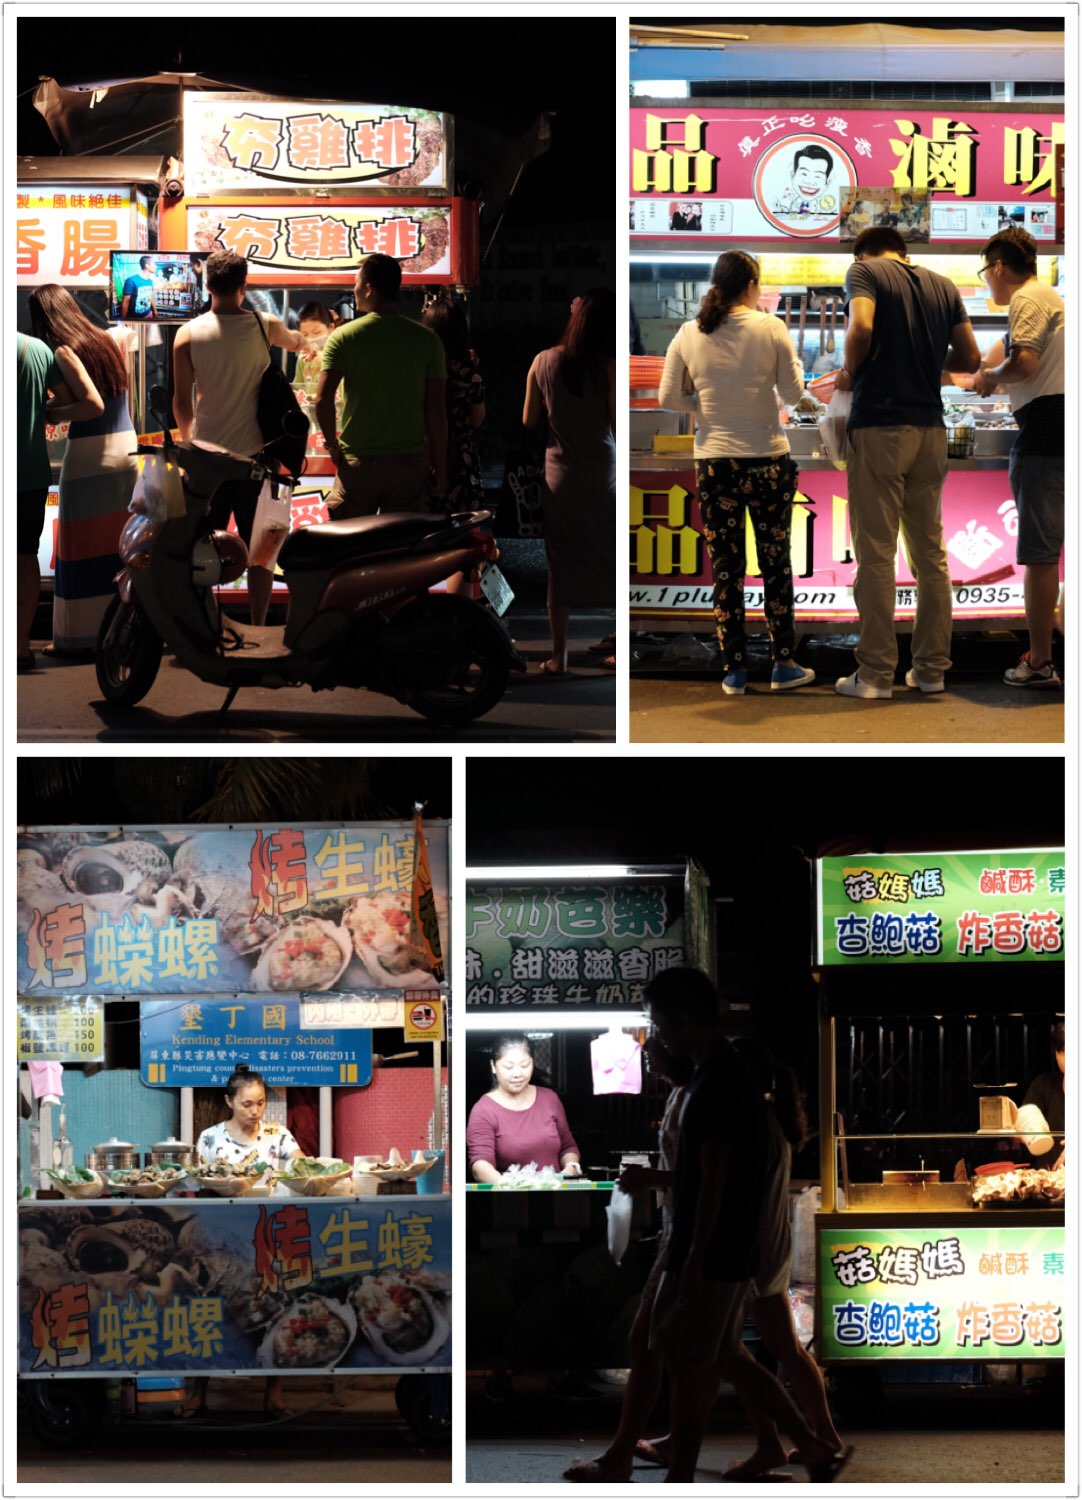 最爱的台湾夜市，好吃的简直太多了，还有很多小玩意可以买，明信片、纪念品